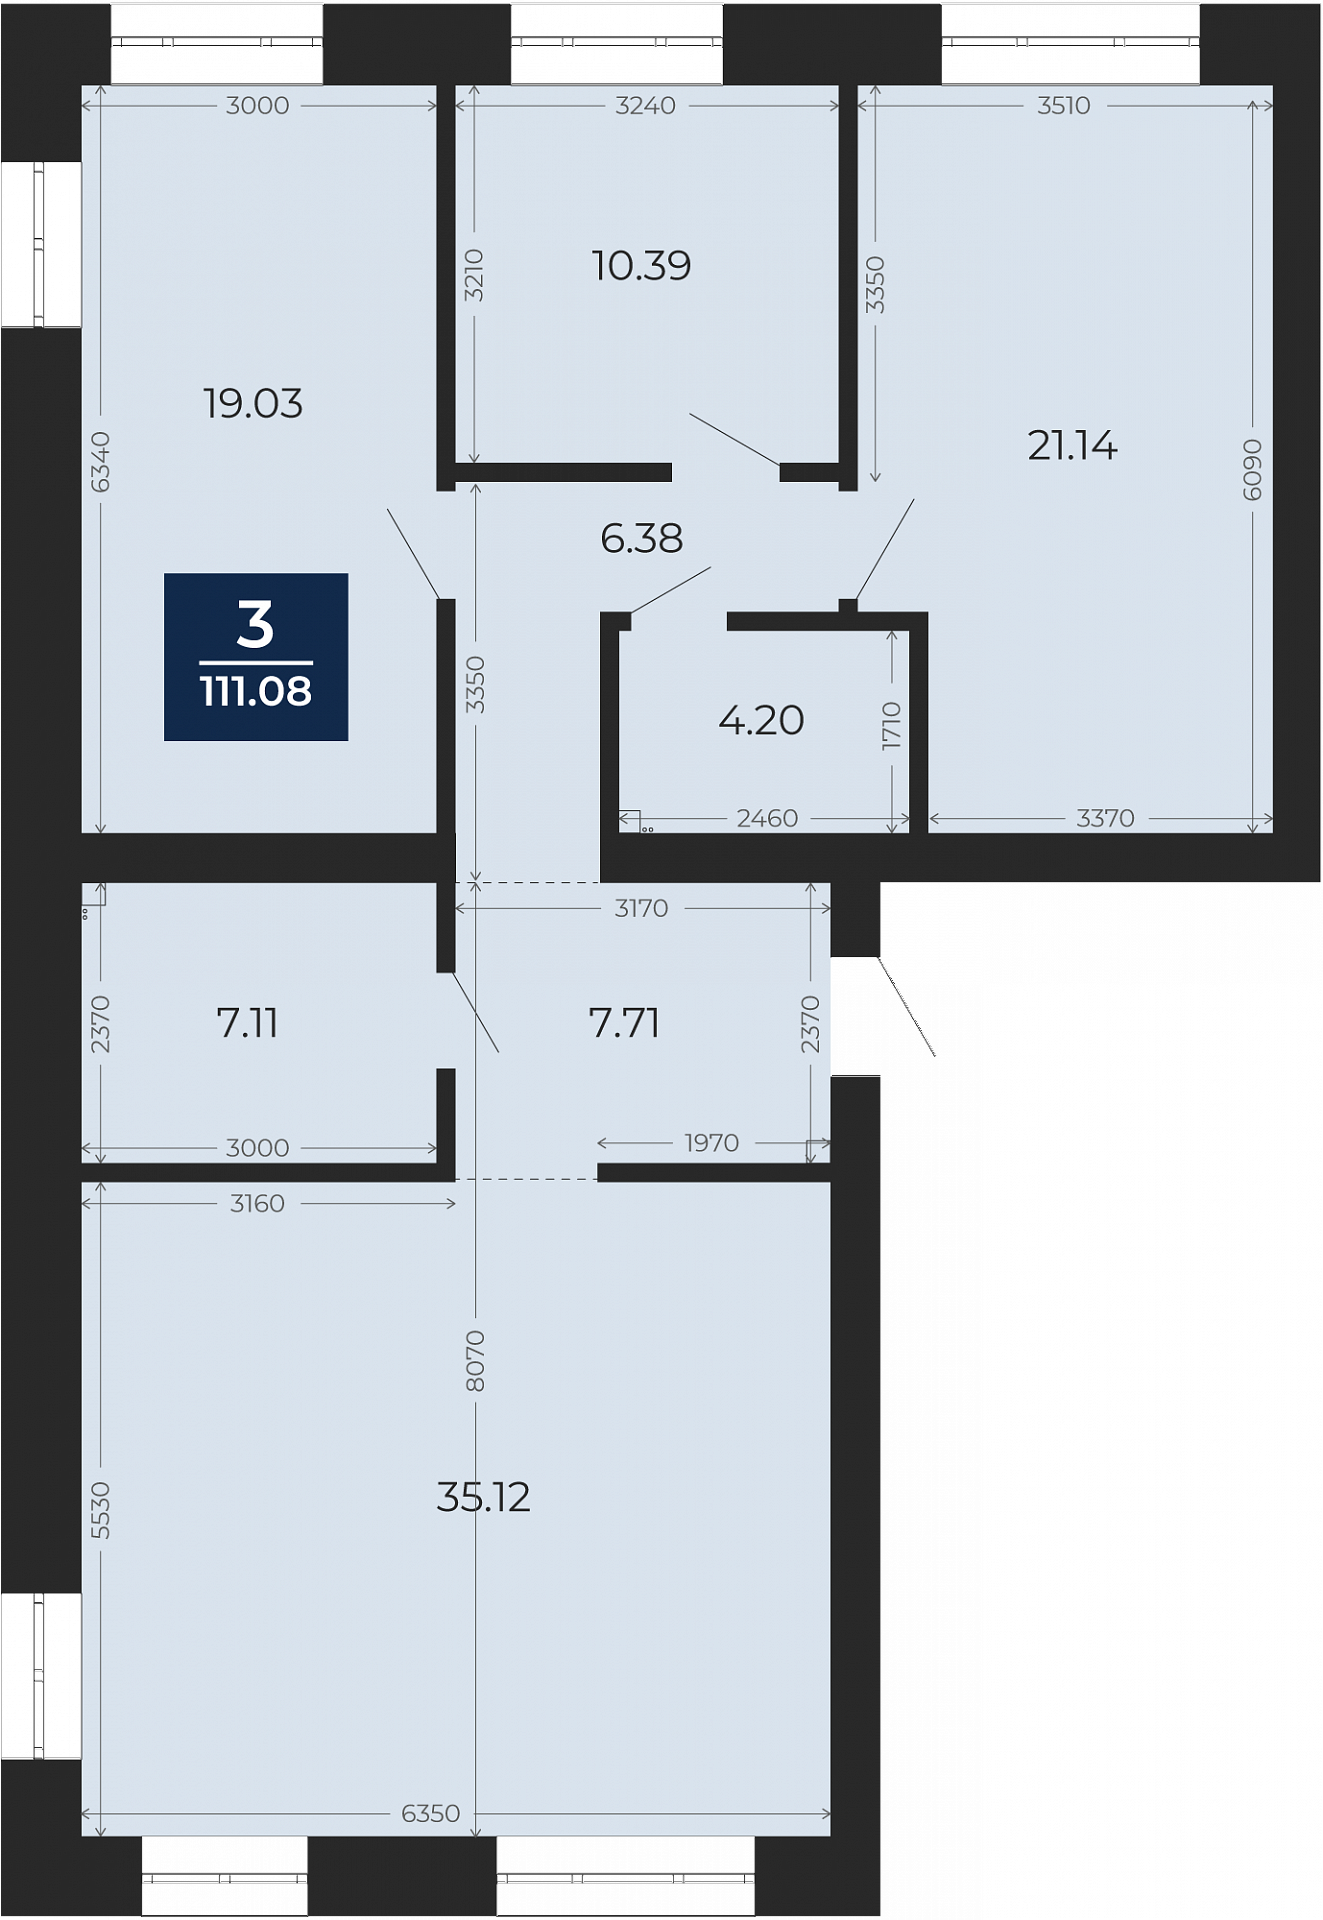 Квартира № 237, 3-комнатная, 111.08 кв. м, 8 этаж